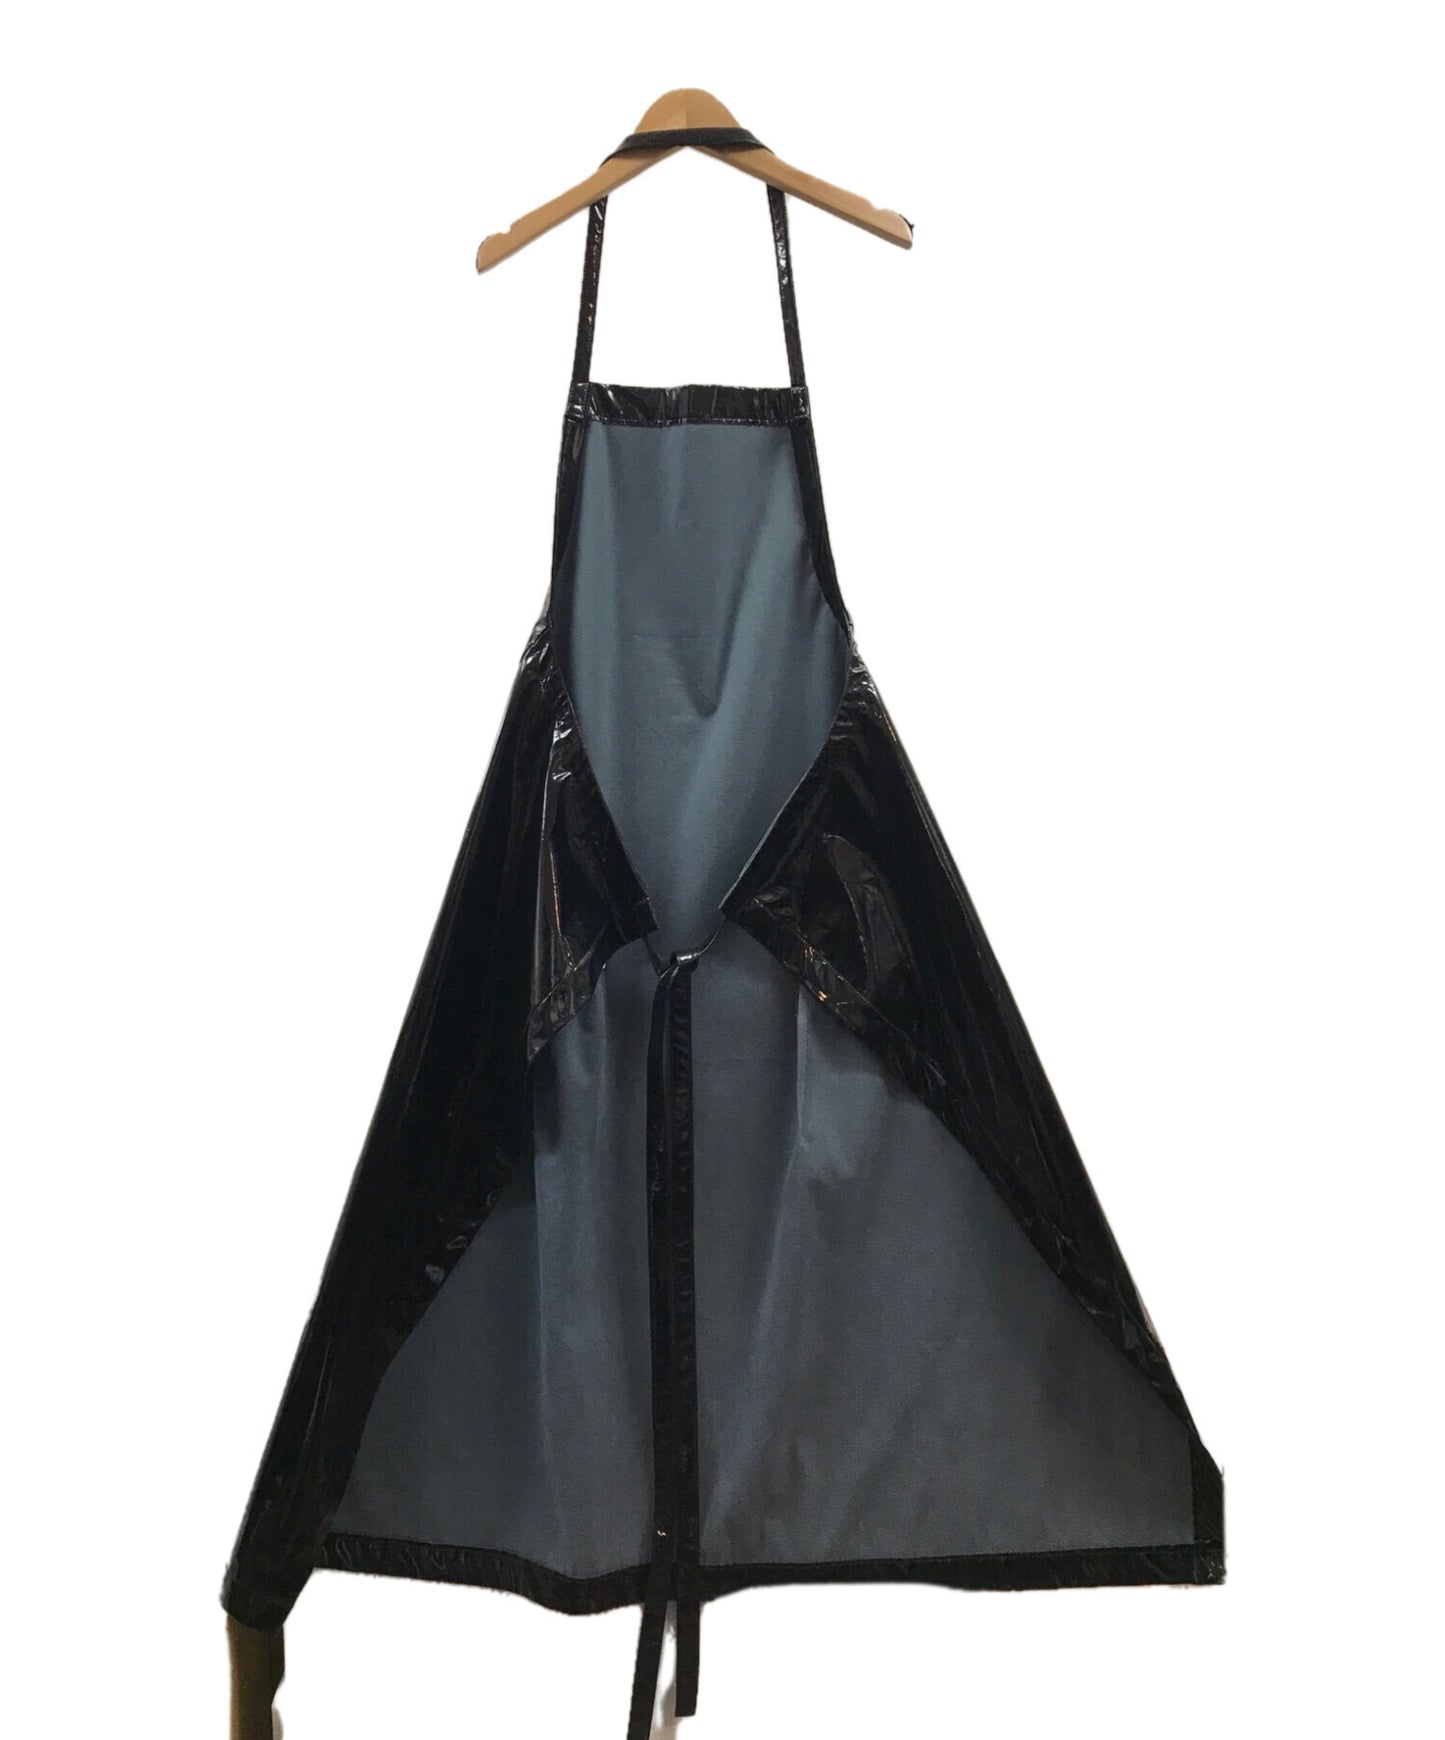 Black Comme des Garcons 에나멜 앞치마 드레스 1T-A008